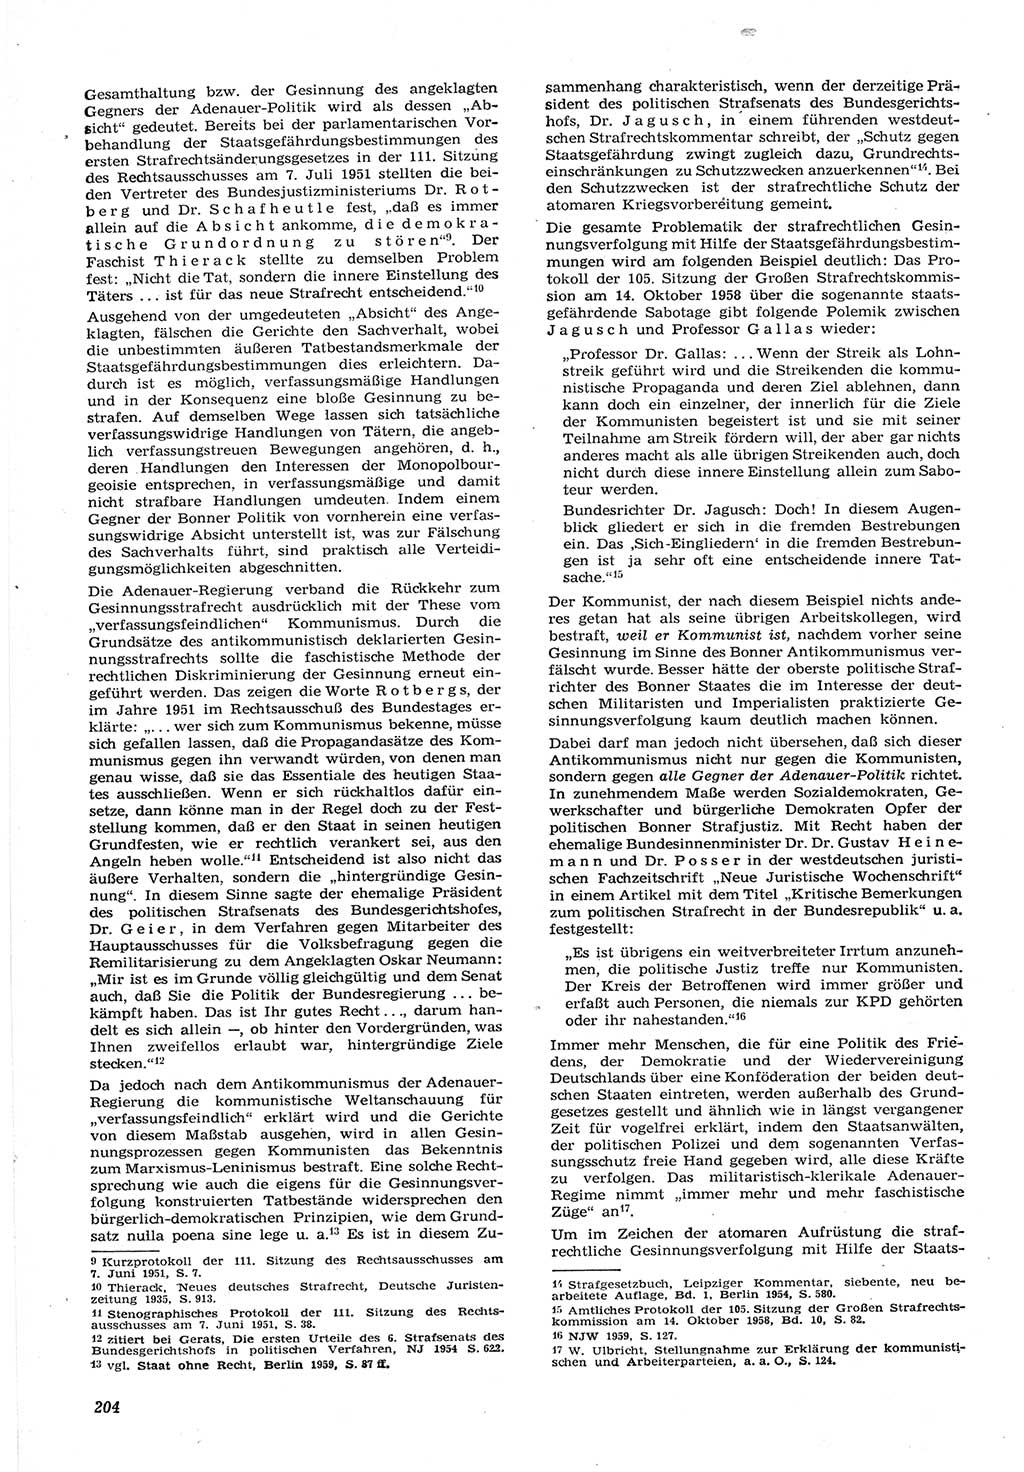 Neue Justiz (NJ), Zeitschrift für Recht und Rechtswissenschaft [Deutsche Demokratische Republik (DDR)], 15. Jahrgang 1961, Seite 204 (NJ DDR 1961, S. 204)